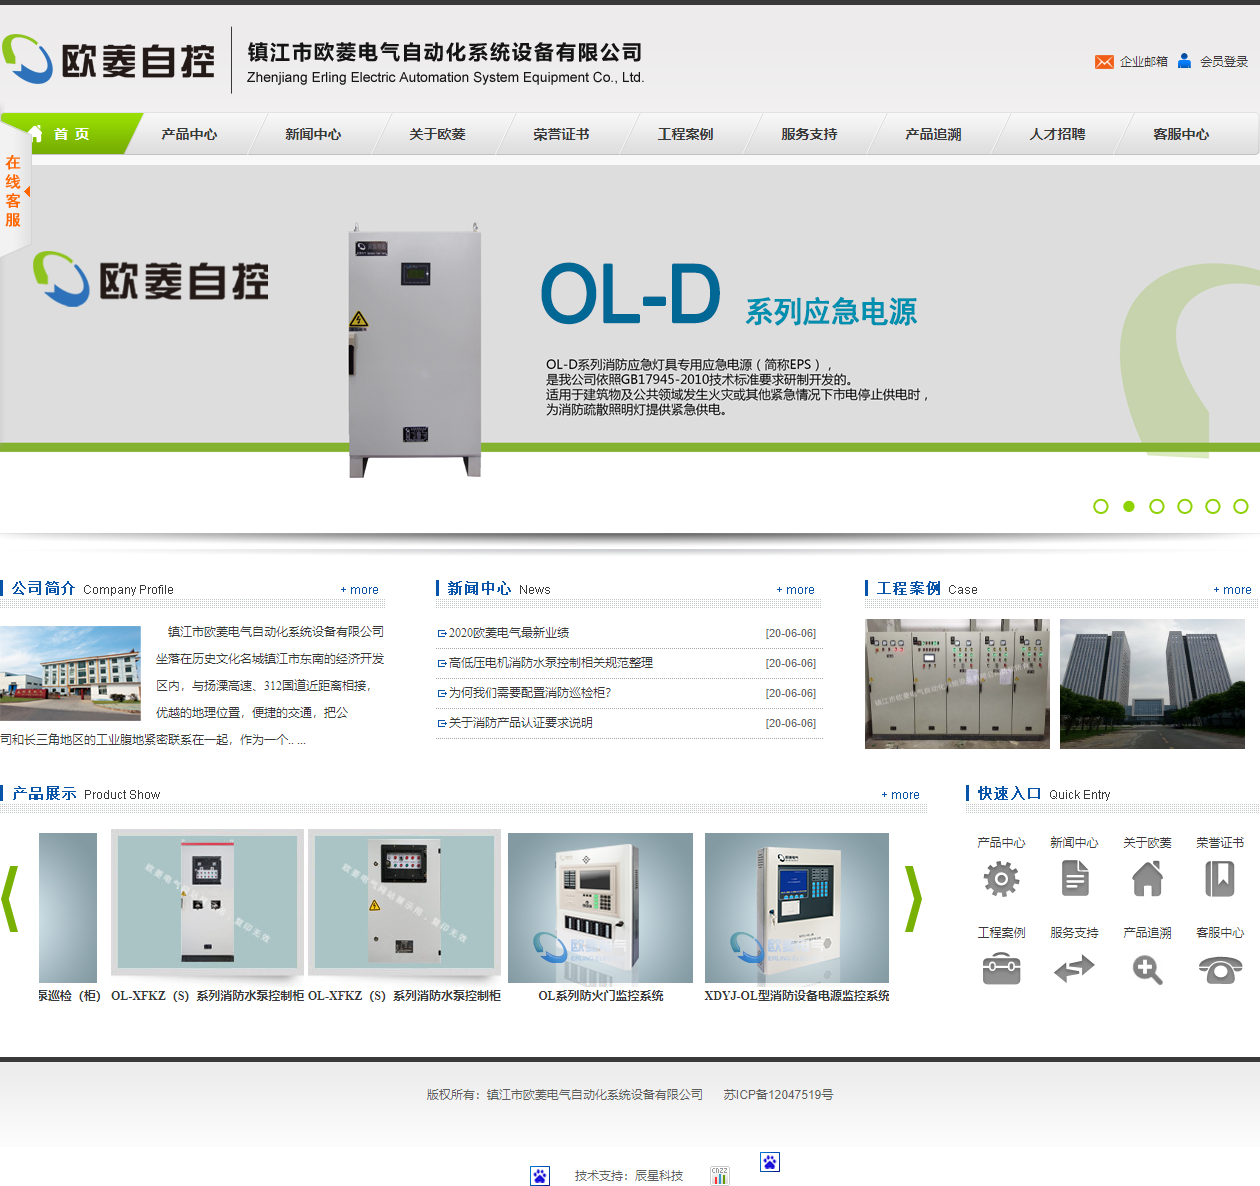 镇江市欧菱电气自动化系统设备有限公司网站案例